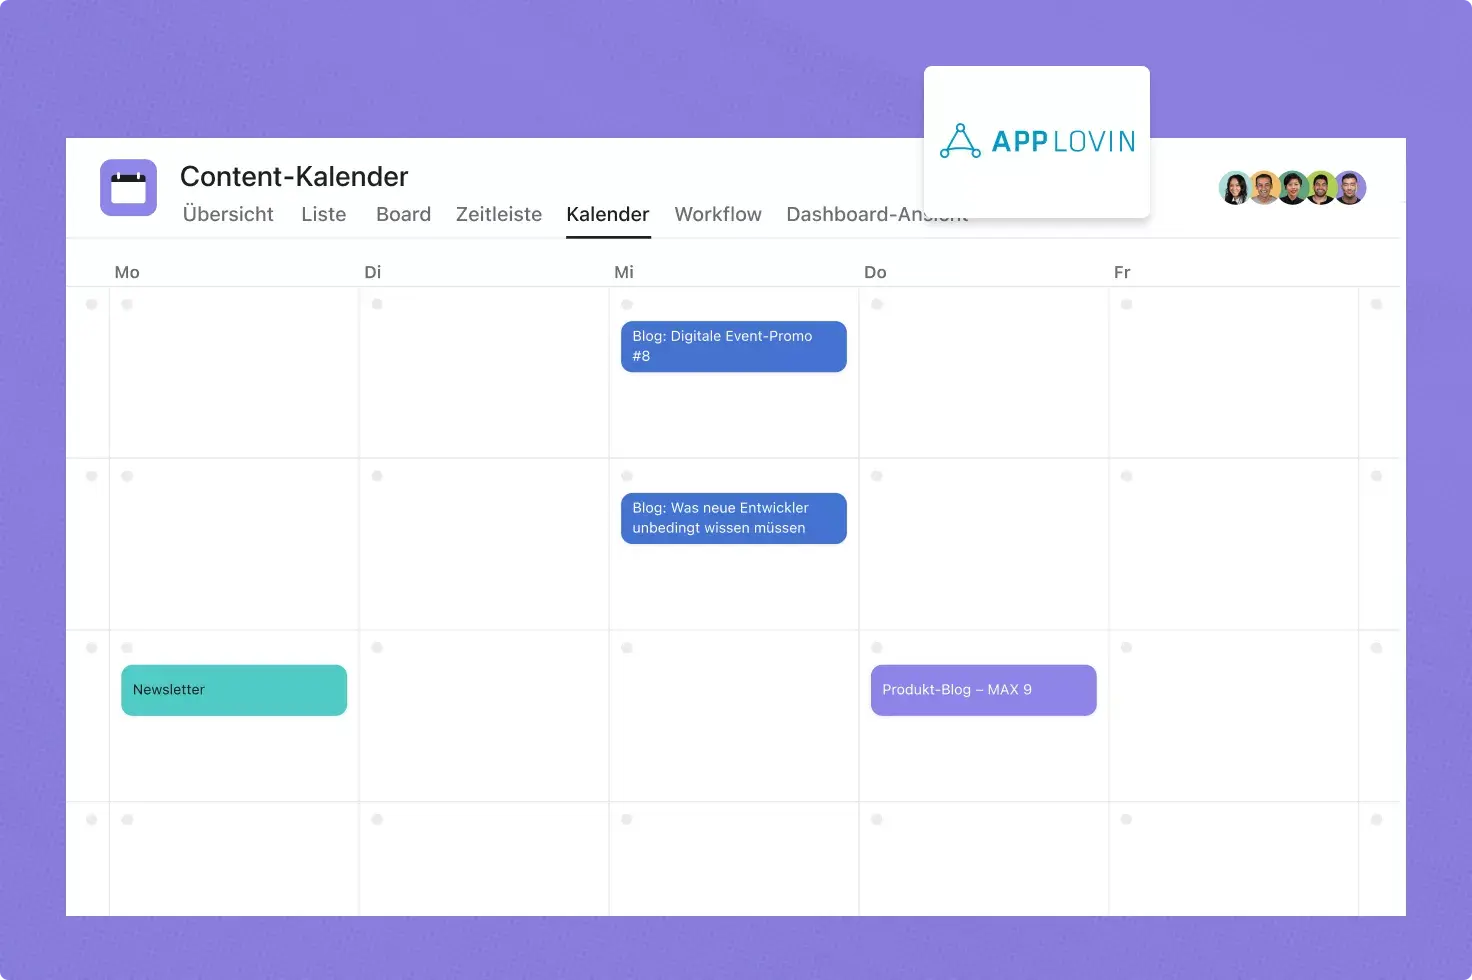 AppLovin verwendet Asana für Content-Kalender-Workflows